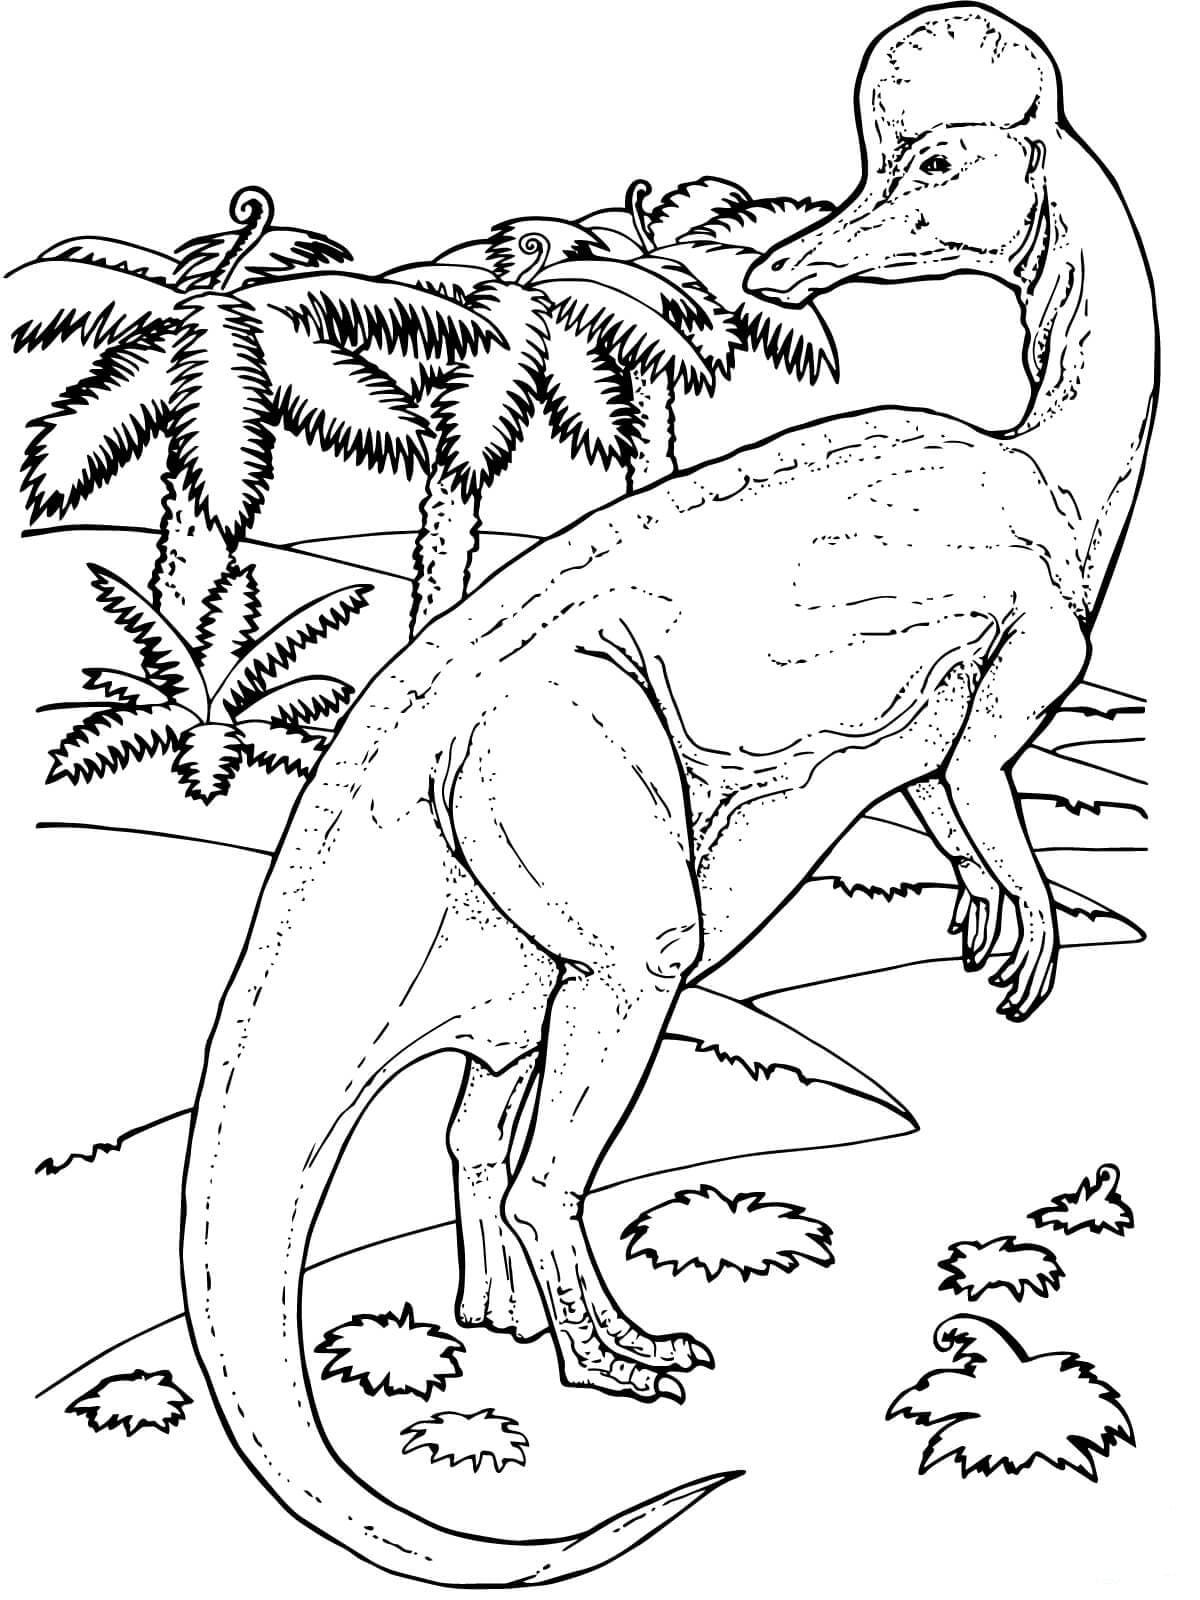 Dibujos de Dinosaurios para Colorear - 100 imágenes para imprimir gratis